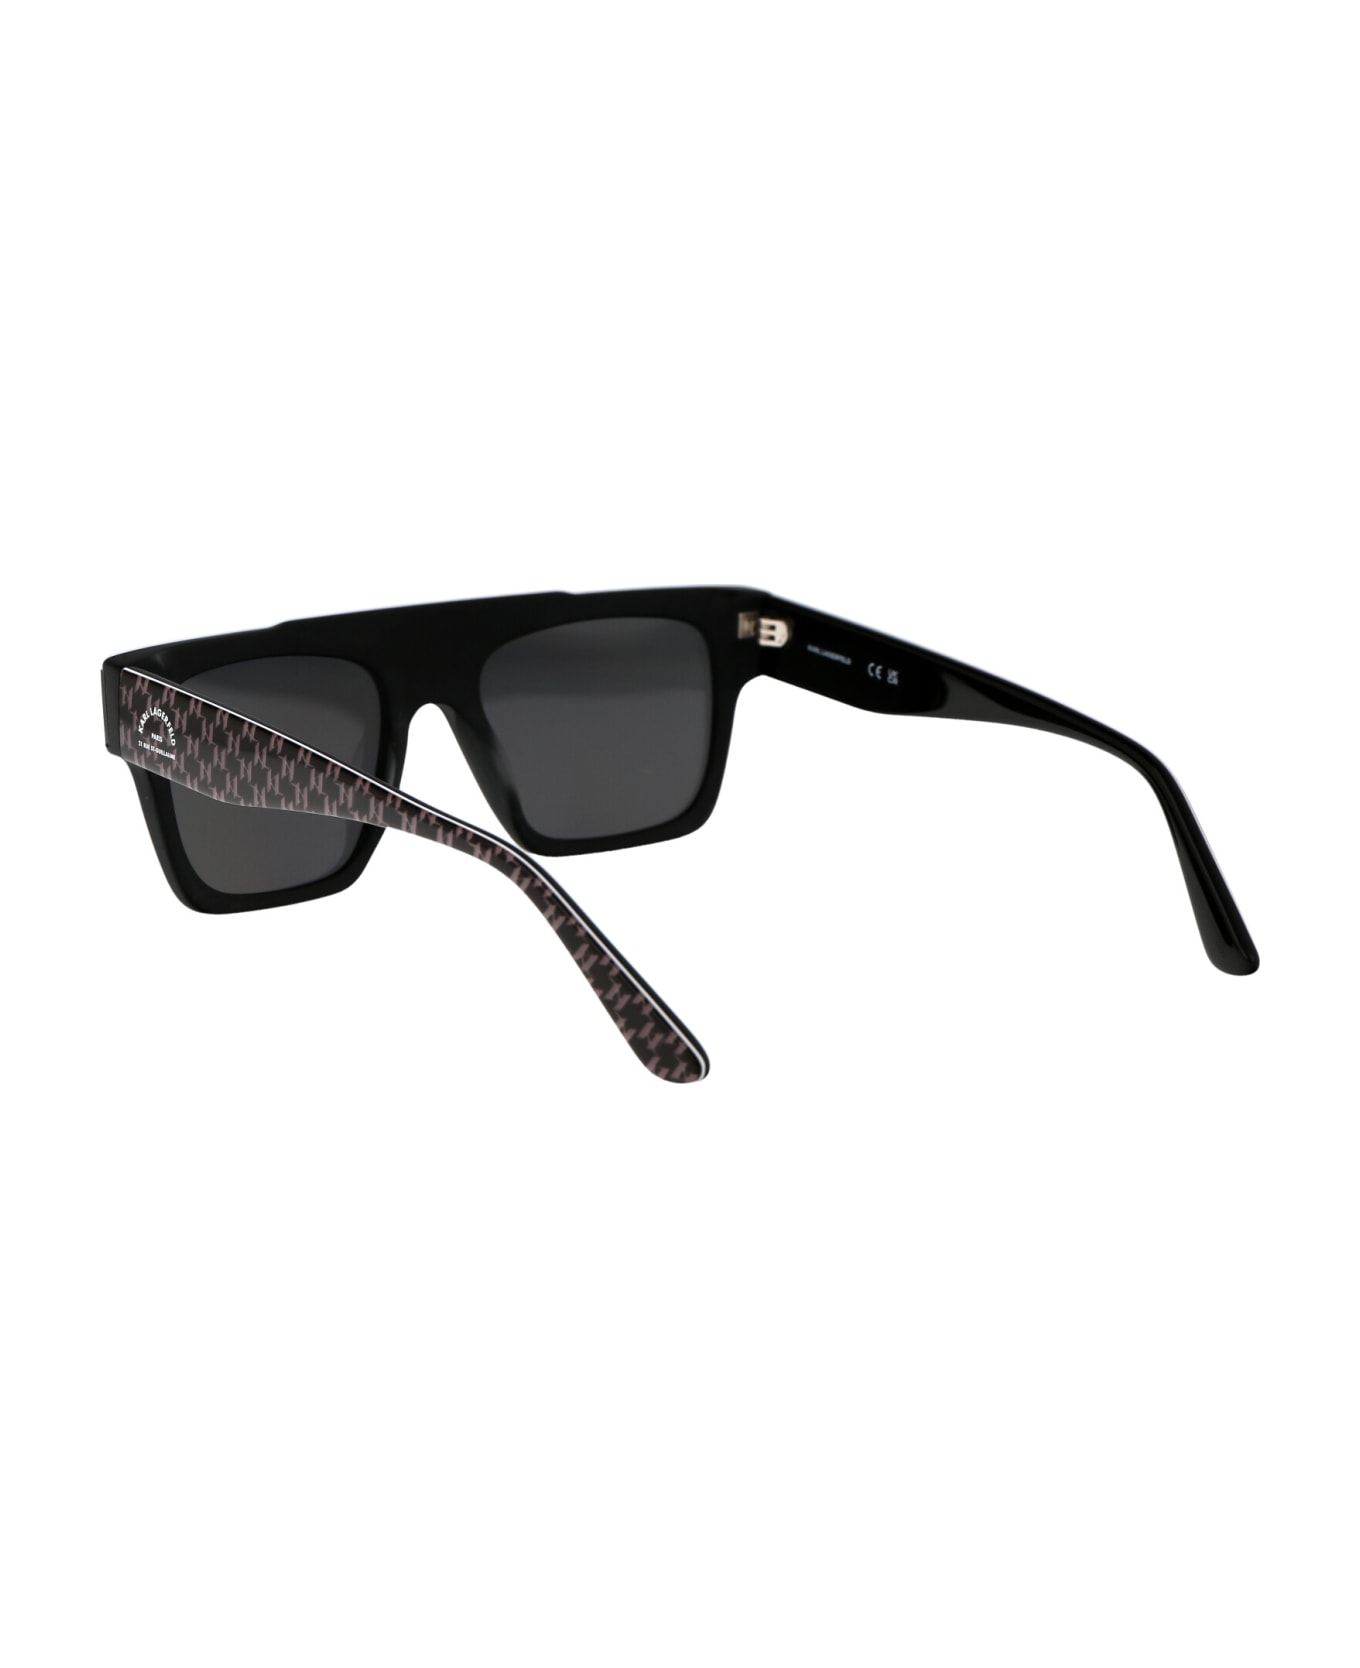 Karl Lagerfeld Kl6090s Sunglasses - 002 MATTE BLACK